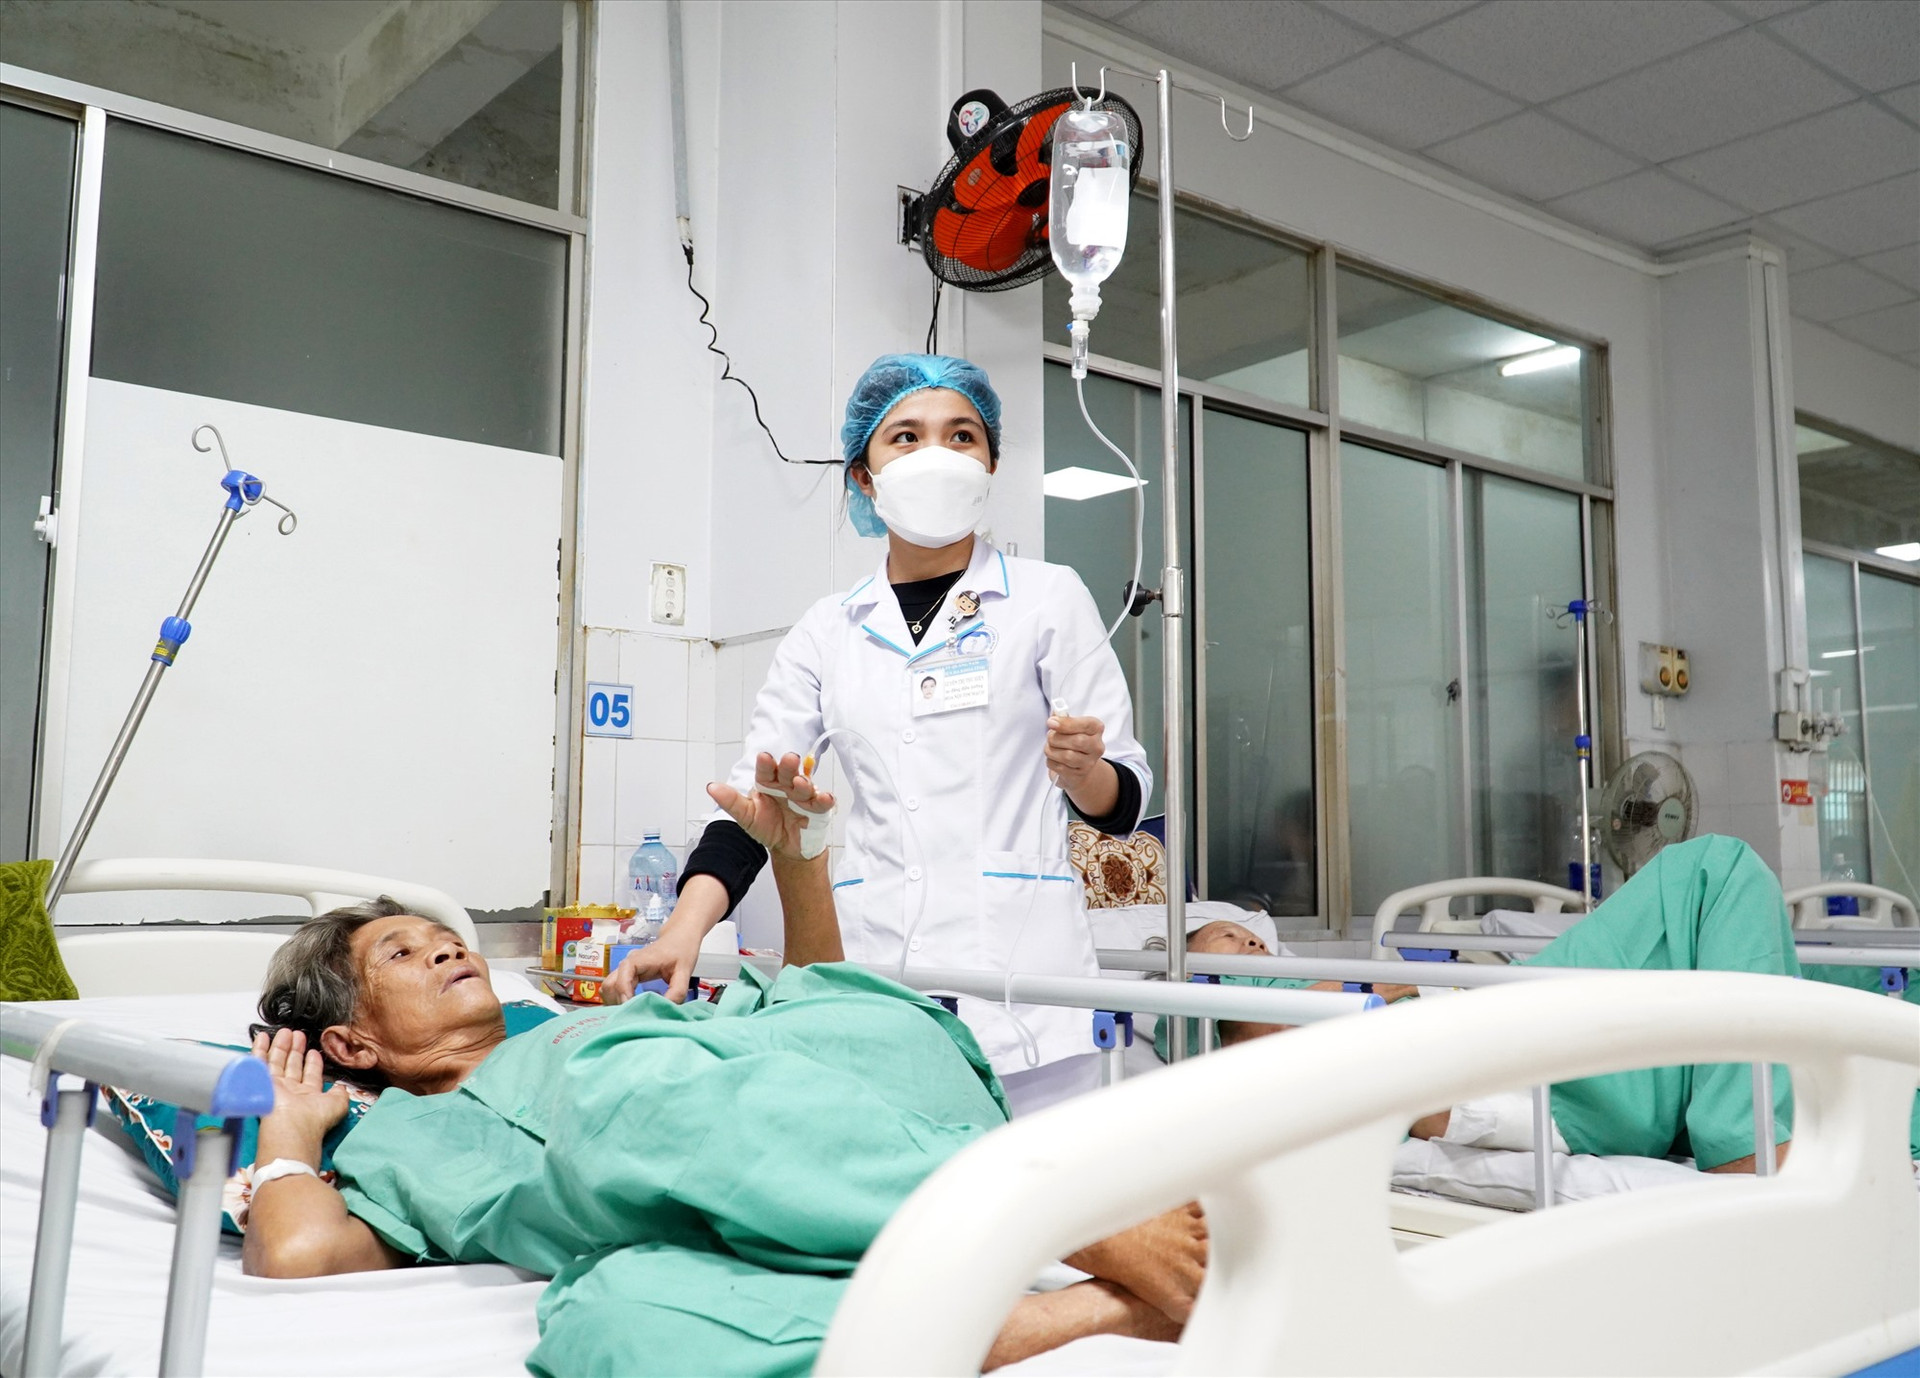 Bệnh viện Đa khoa Quảng Nam đang trong tình trạng thiếu hóa chất, vật tư y tế phục vụ khám chữa bệnh. Ảnh: X.H